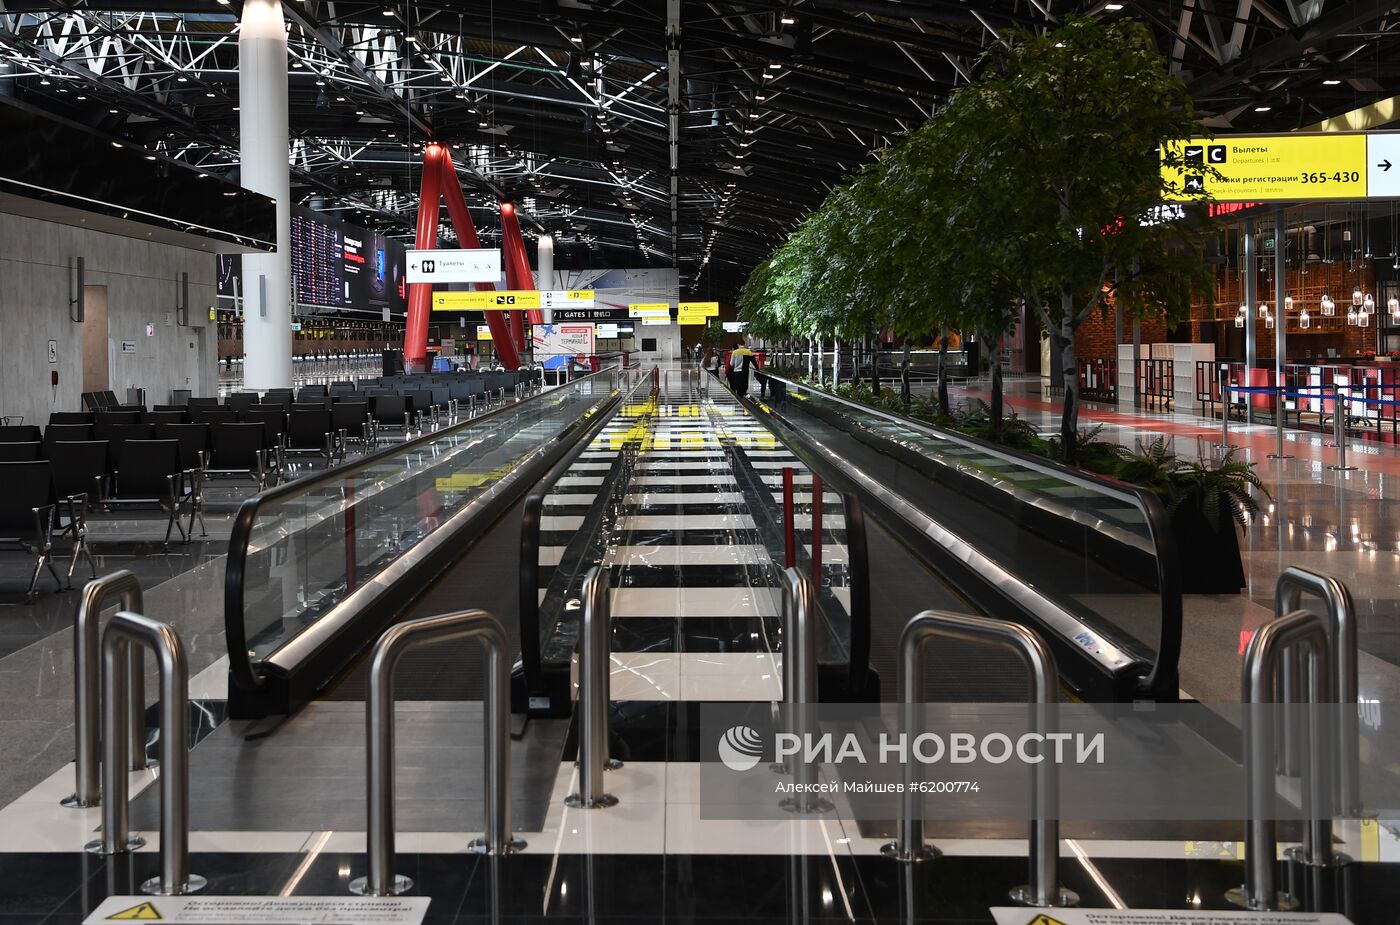 Шереметьево с 20 марта закрывает терминалы E и С